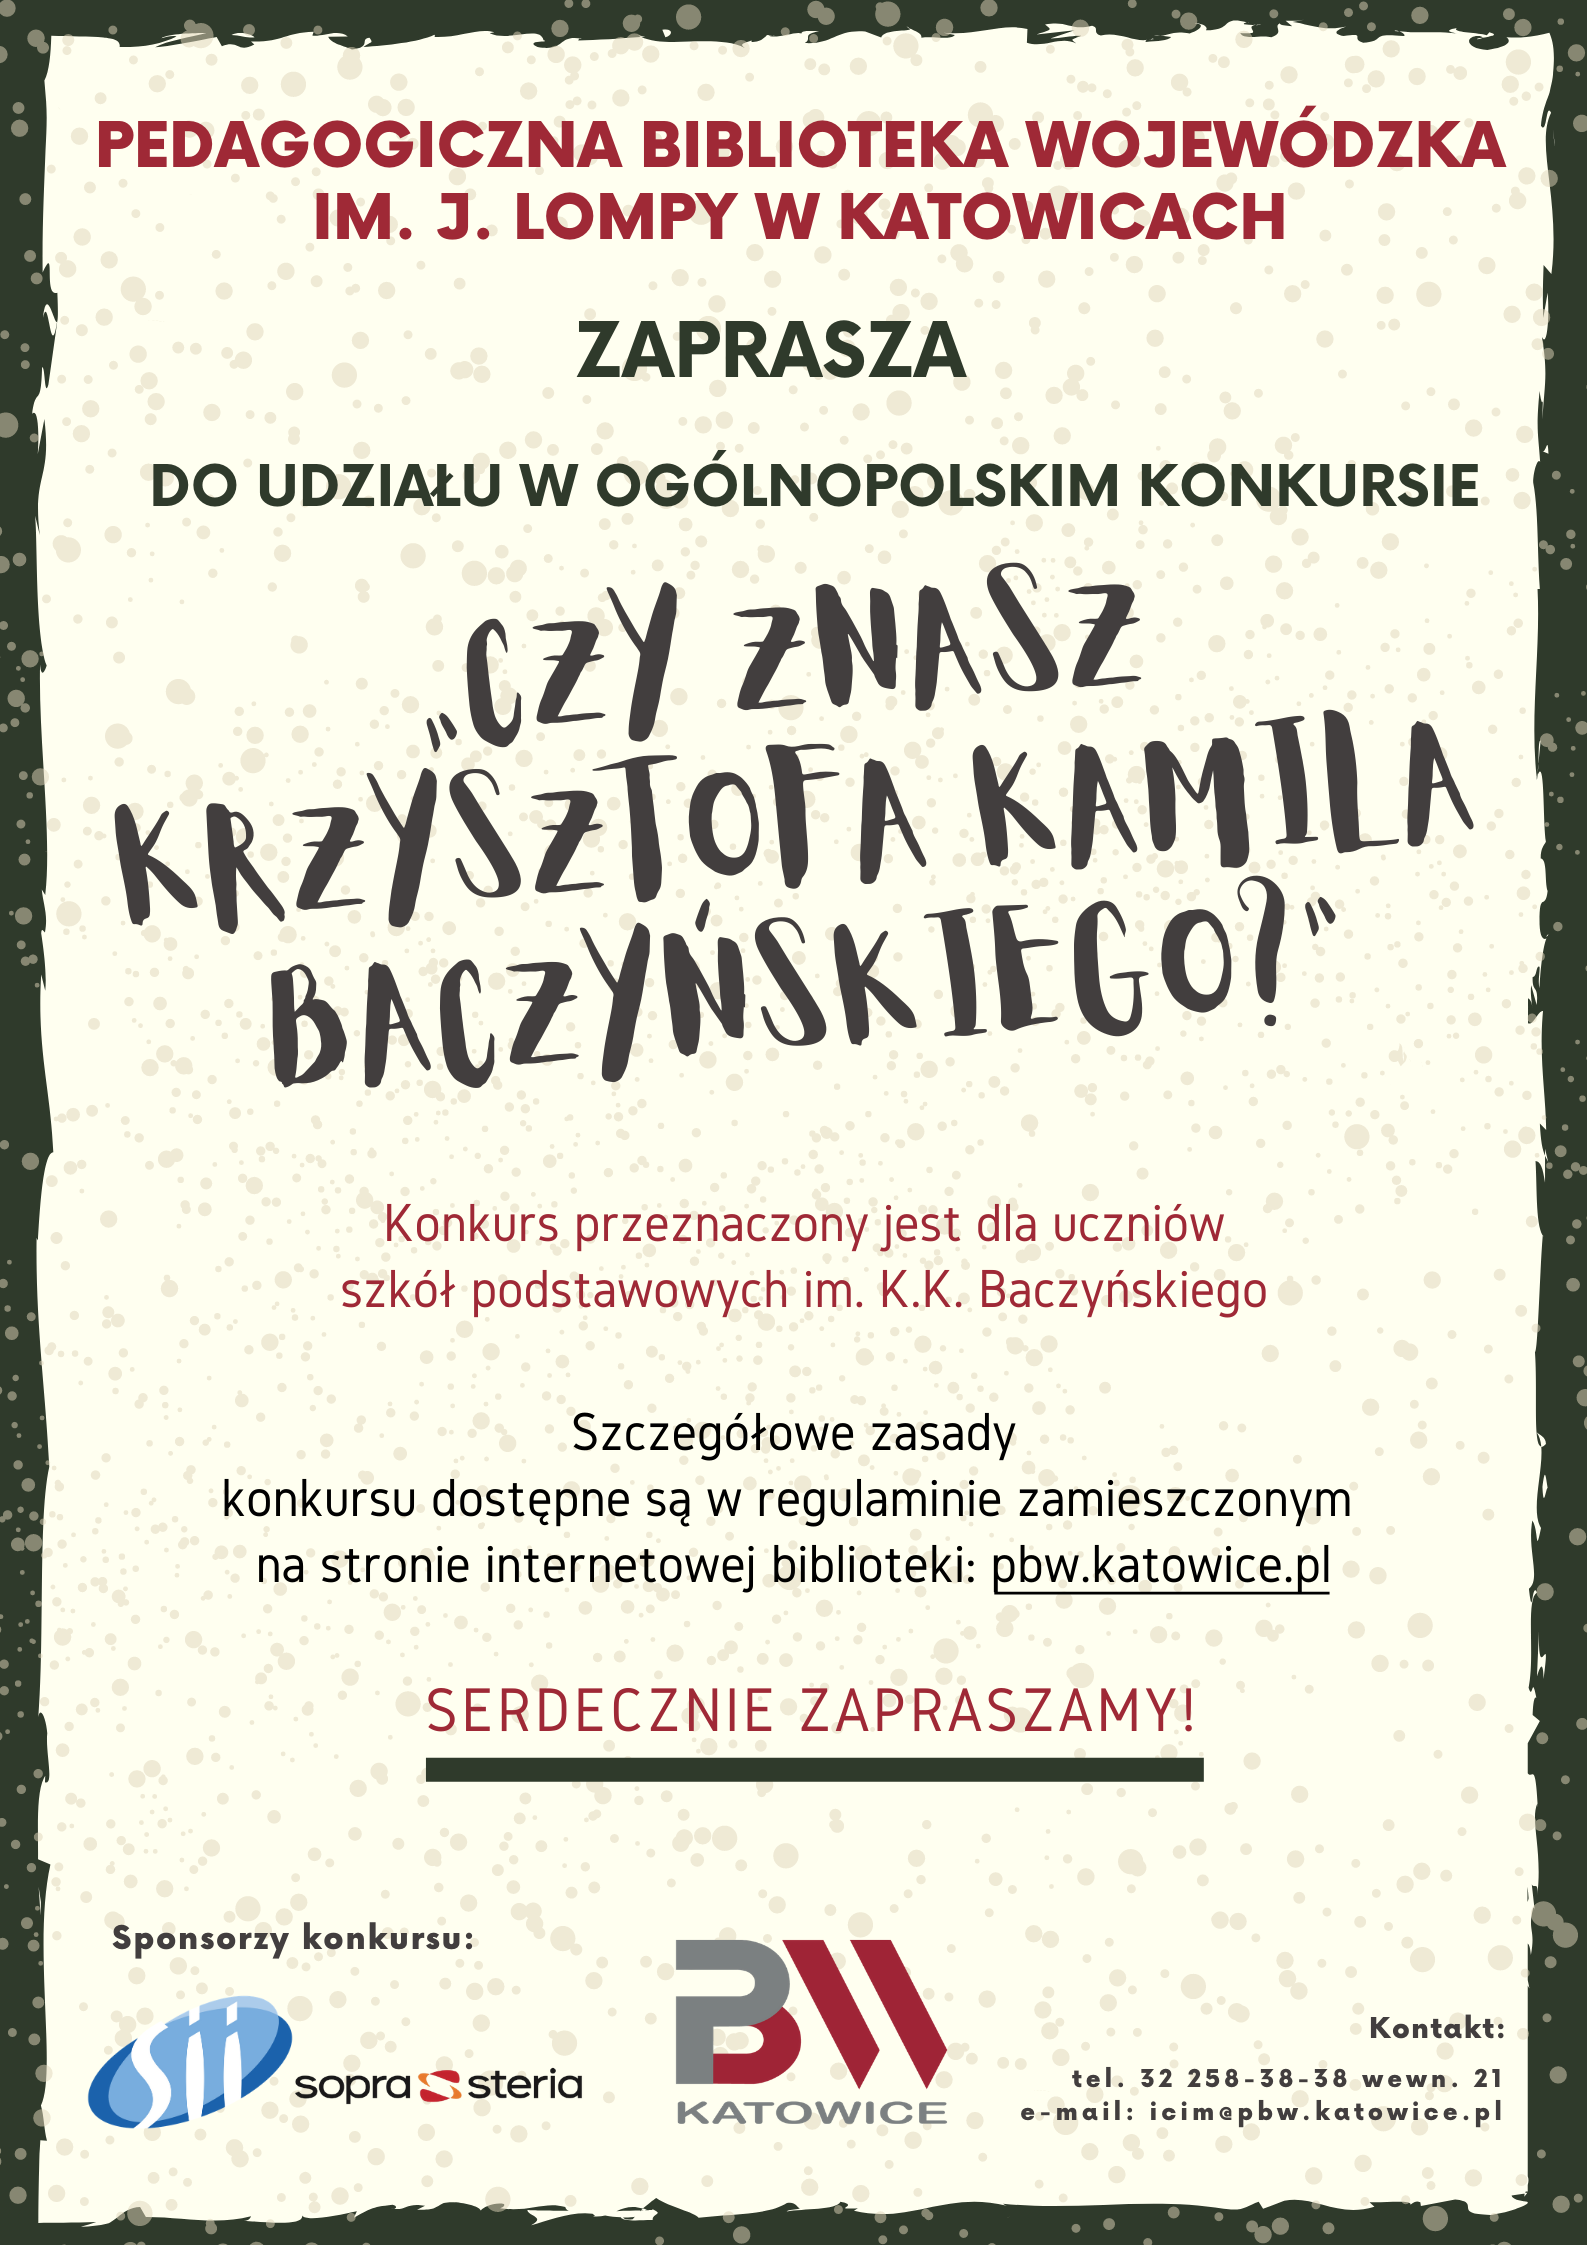 Plakat z informacjami o konkursie "Czy znasz Krzysztofa Kamila Baczyńskiego?"